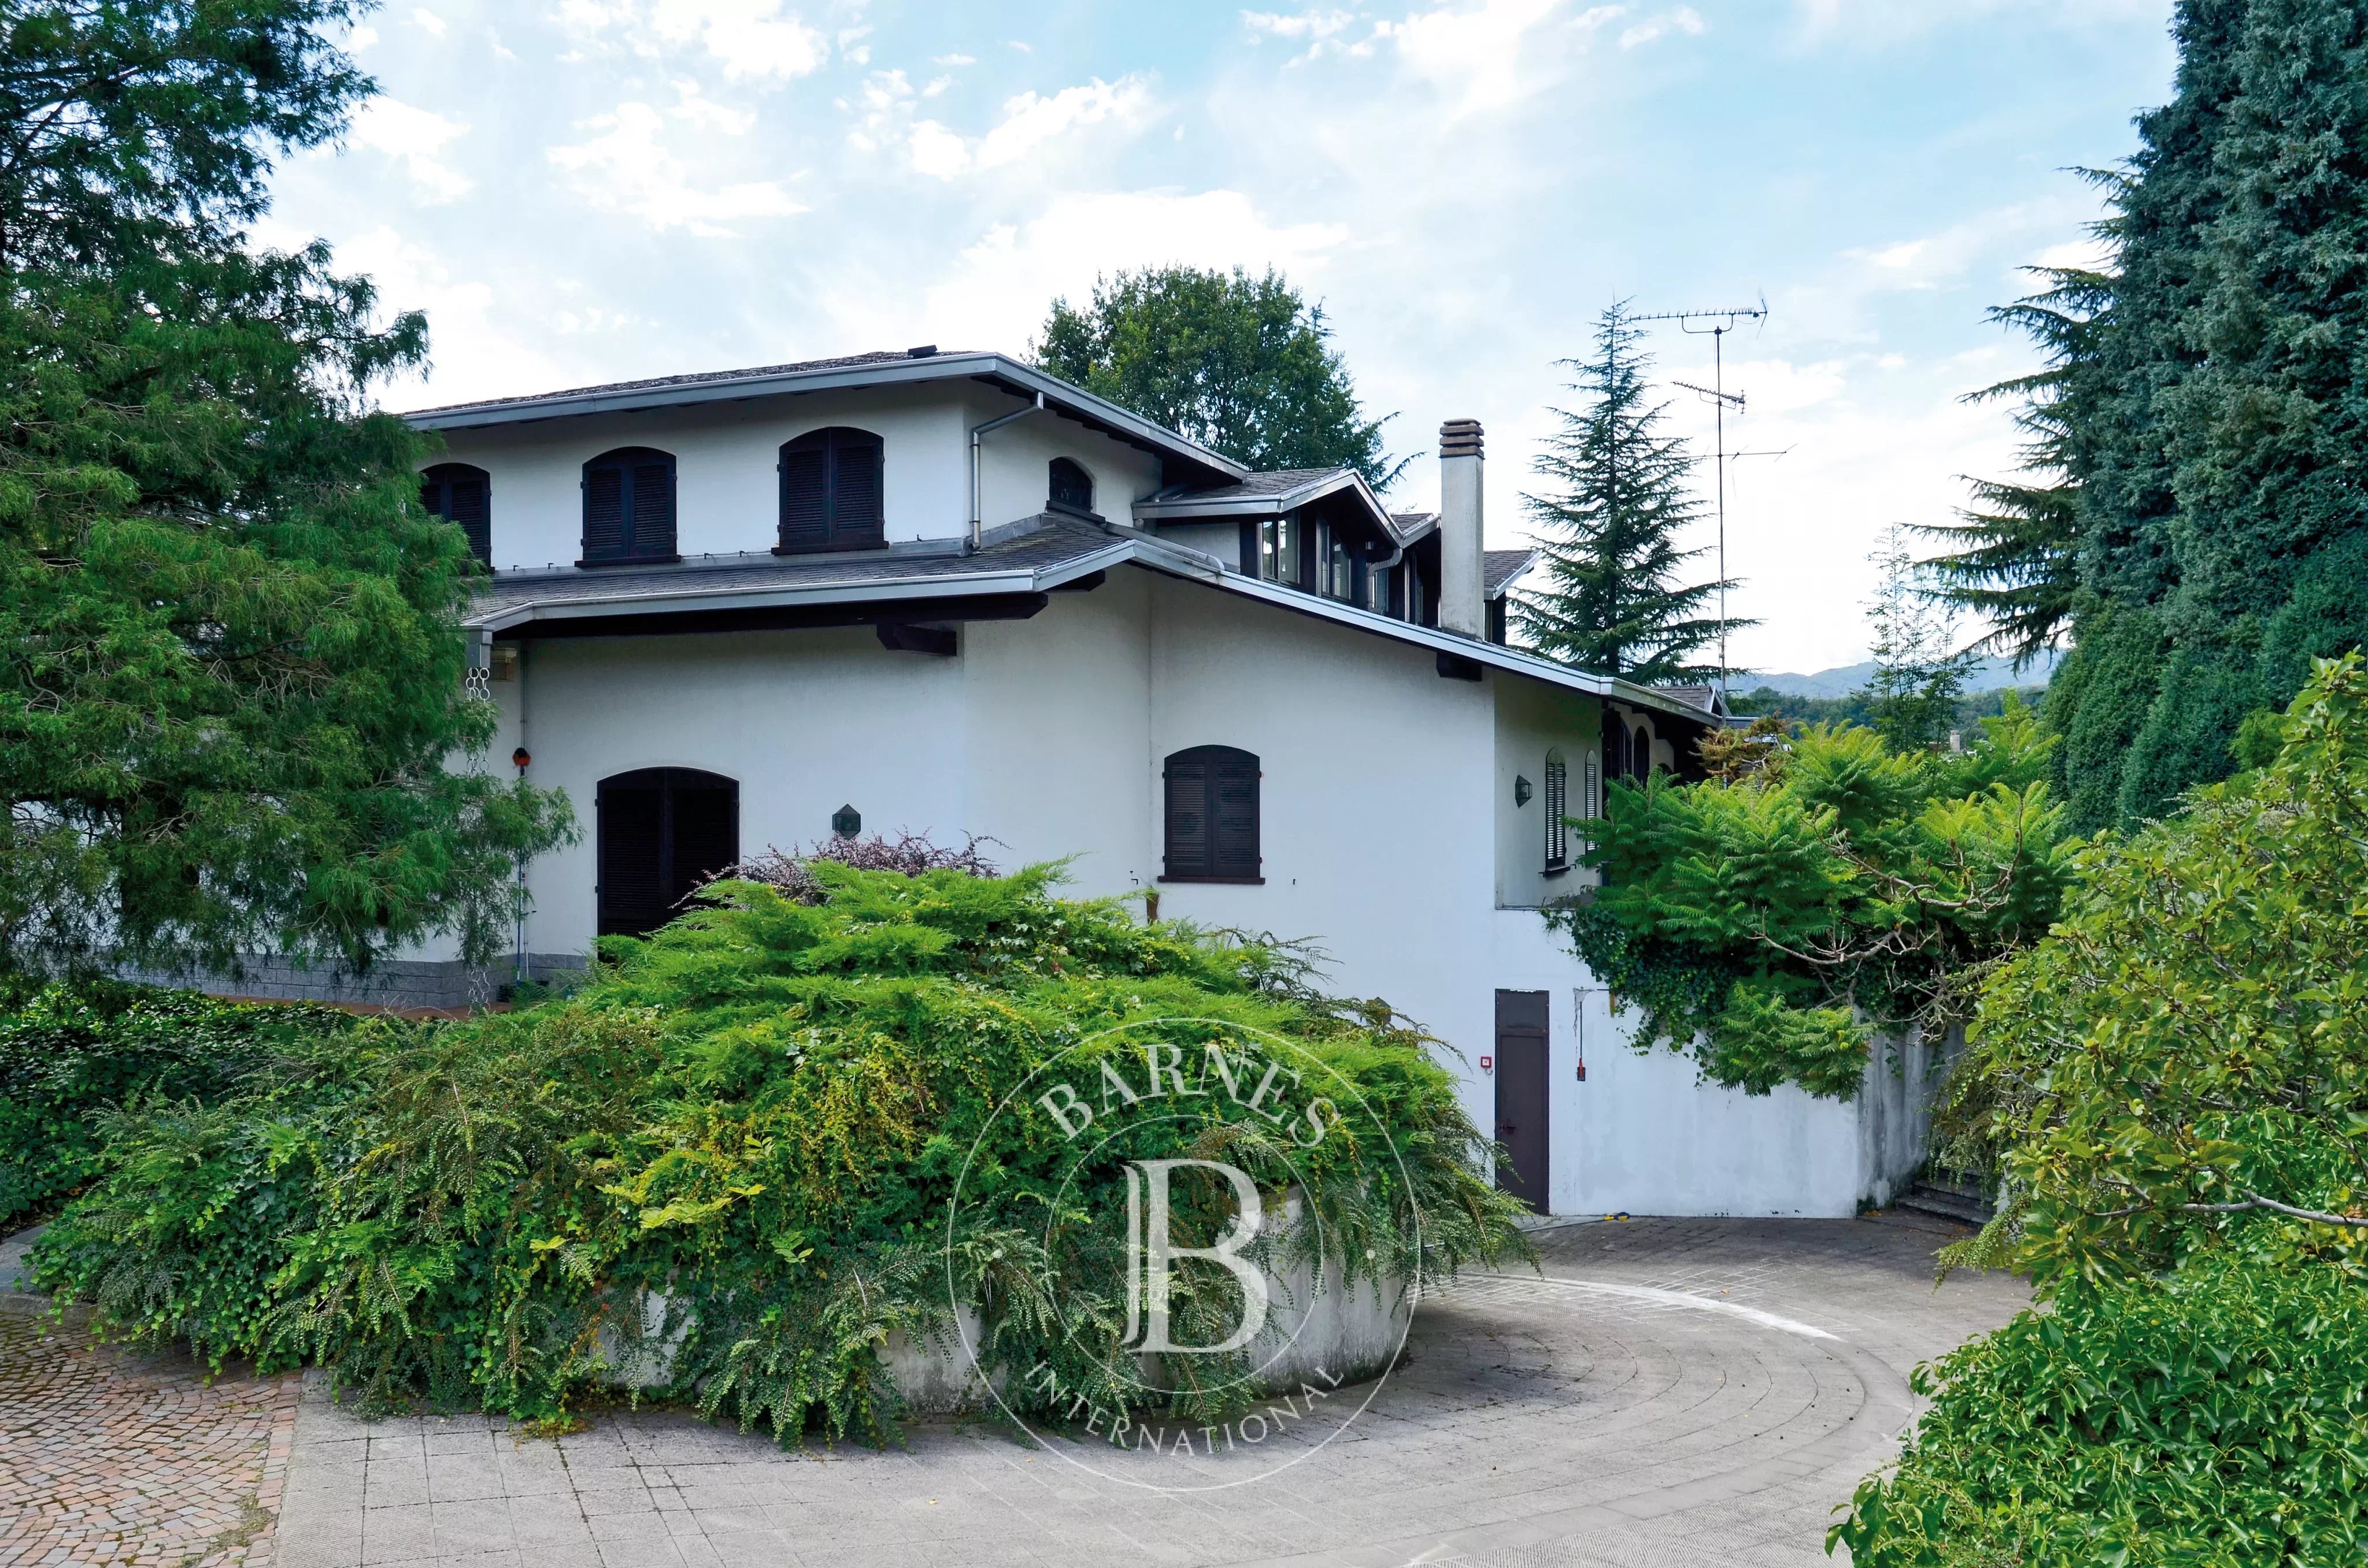 Prestigious villa with indoor pool, stable and park. Borgomanero. Area Lakes: Maggiore and d'Orta